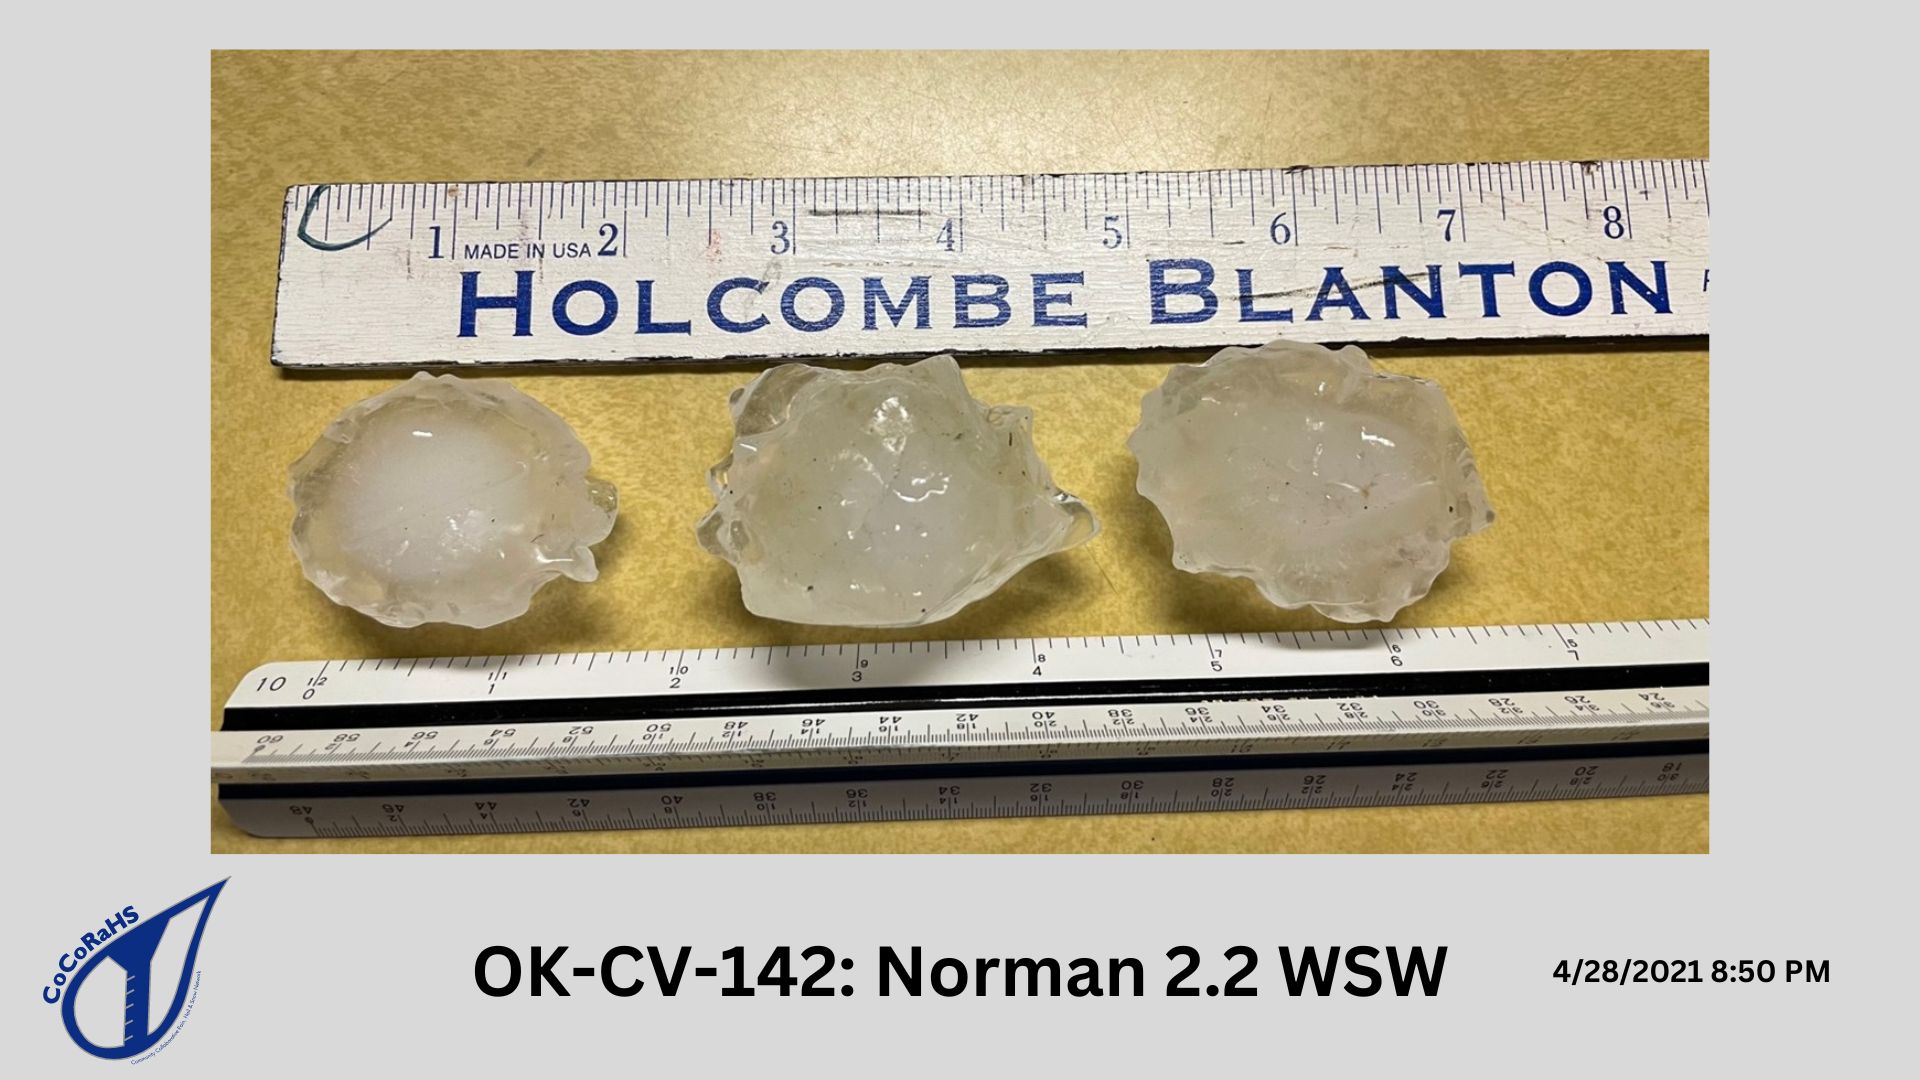 OK-CV-142 hail photo from 4/28/2021